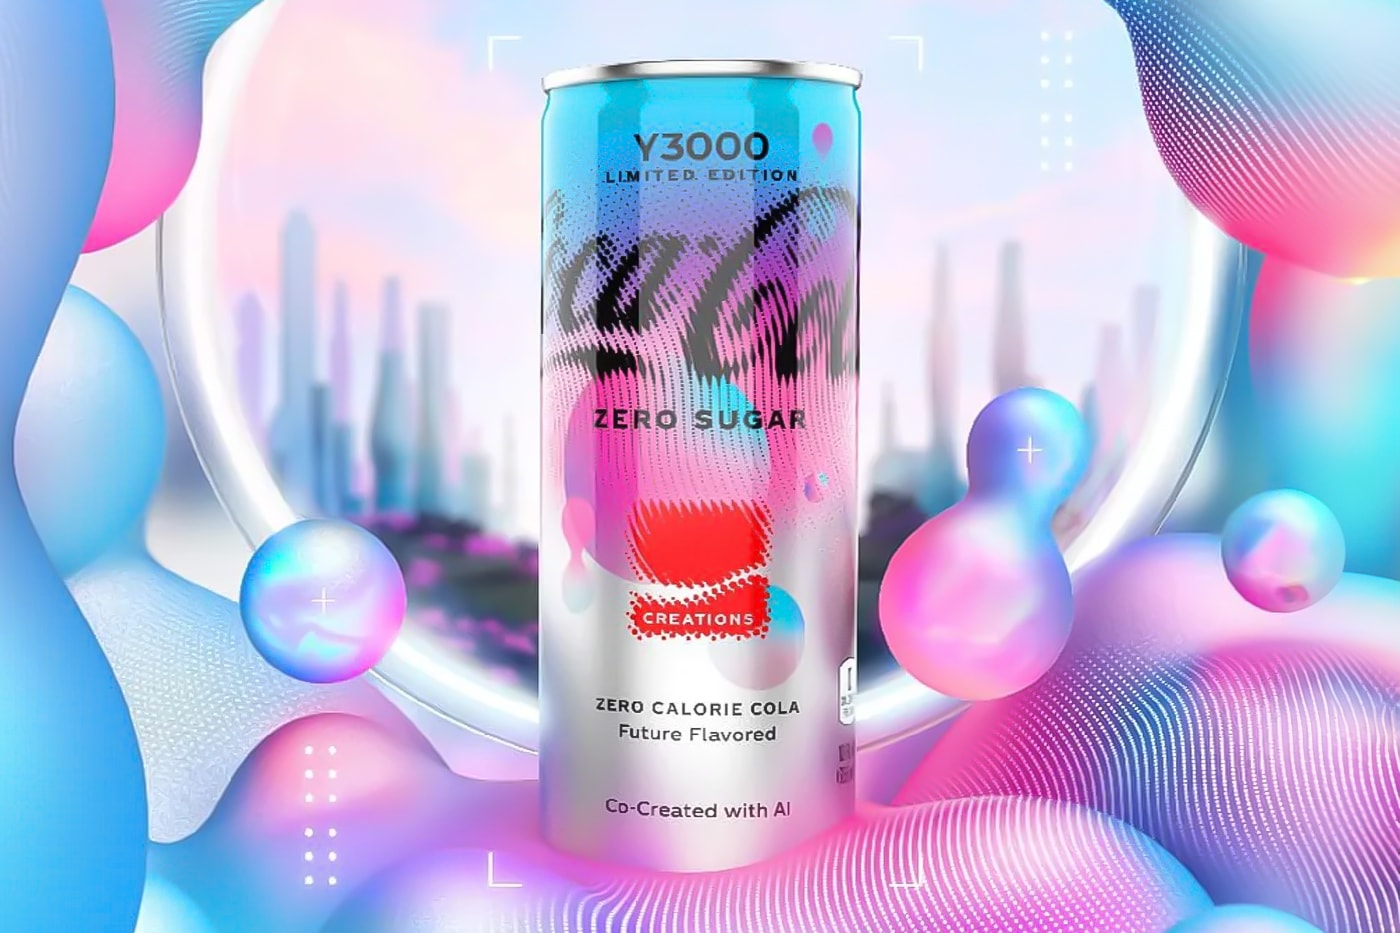 Coca-Cola Has Launched New AI-Created Flavor coca-cola y3000 zero sugar artificial intelligence